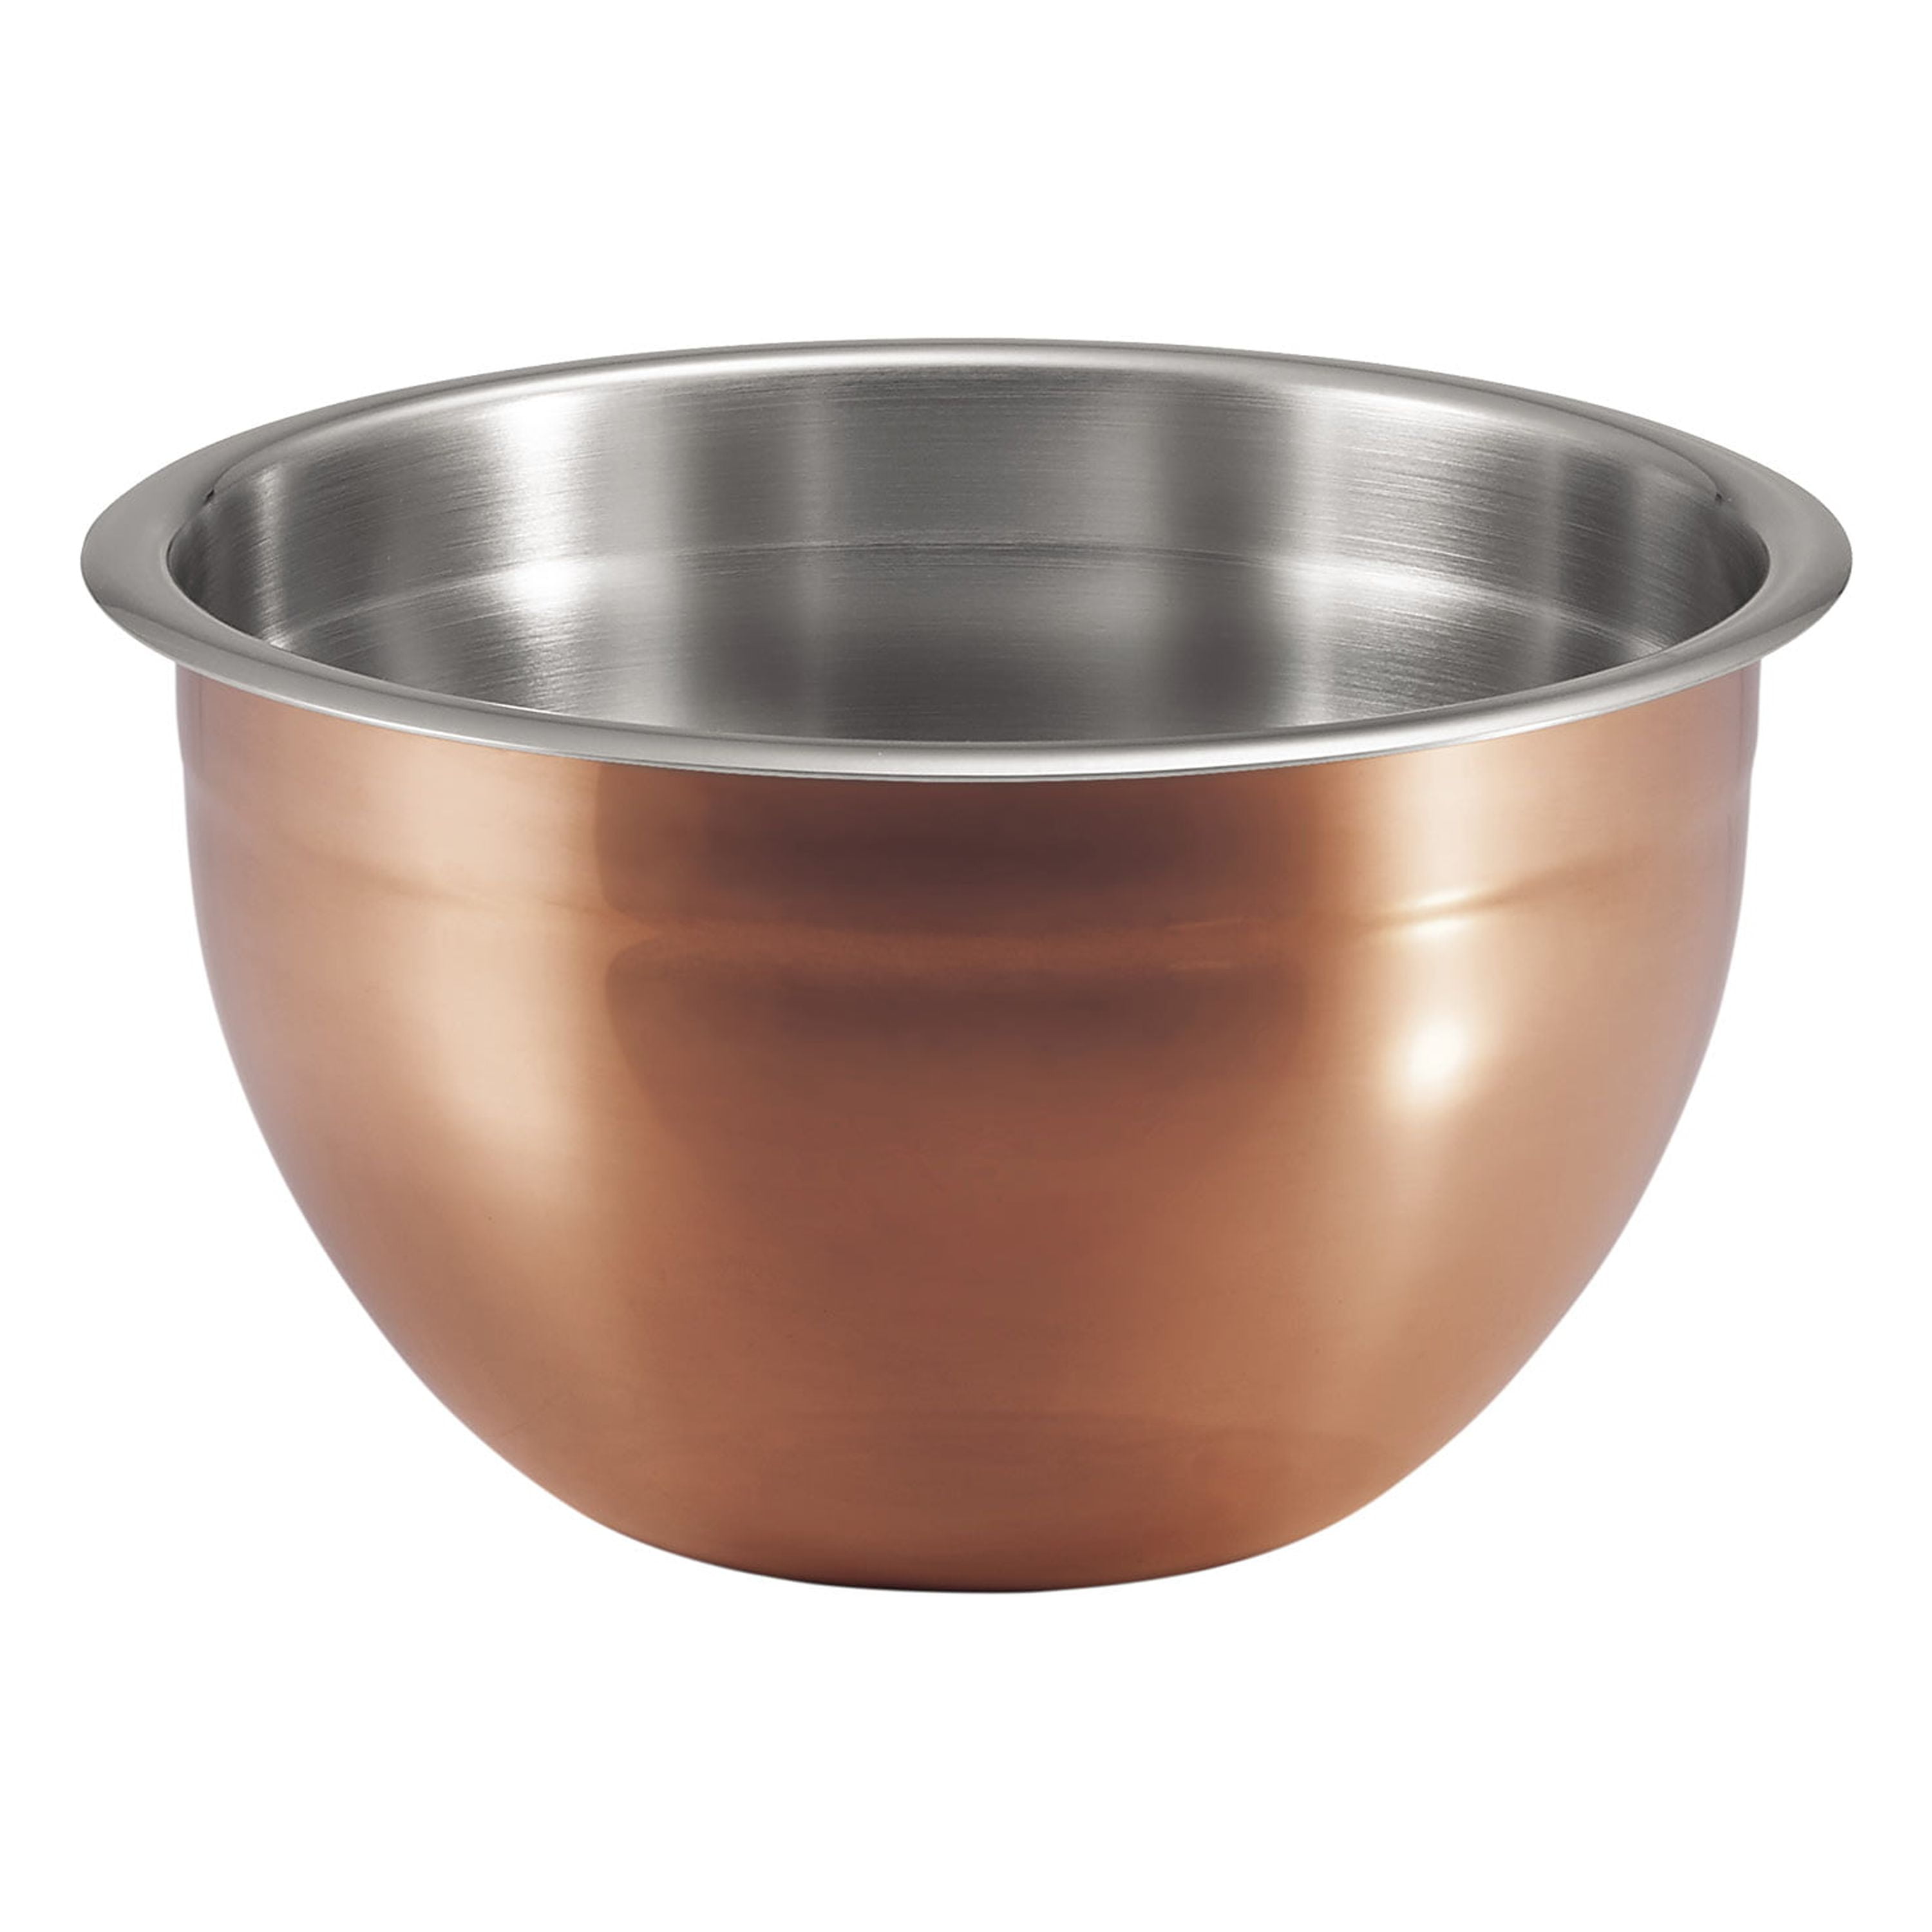 Tramontina Gourmet Copper Clad Mixing Bowls